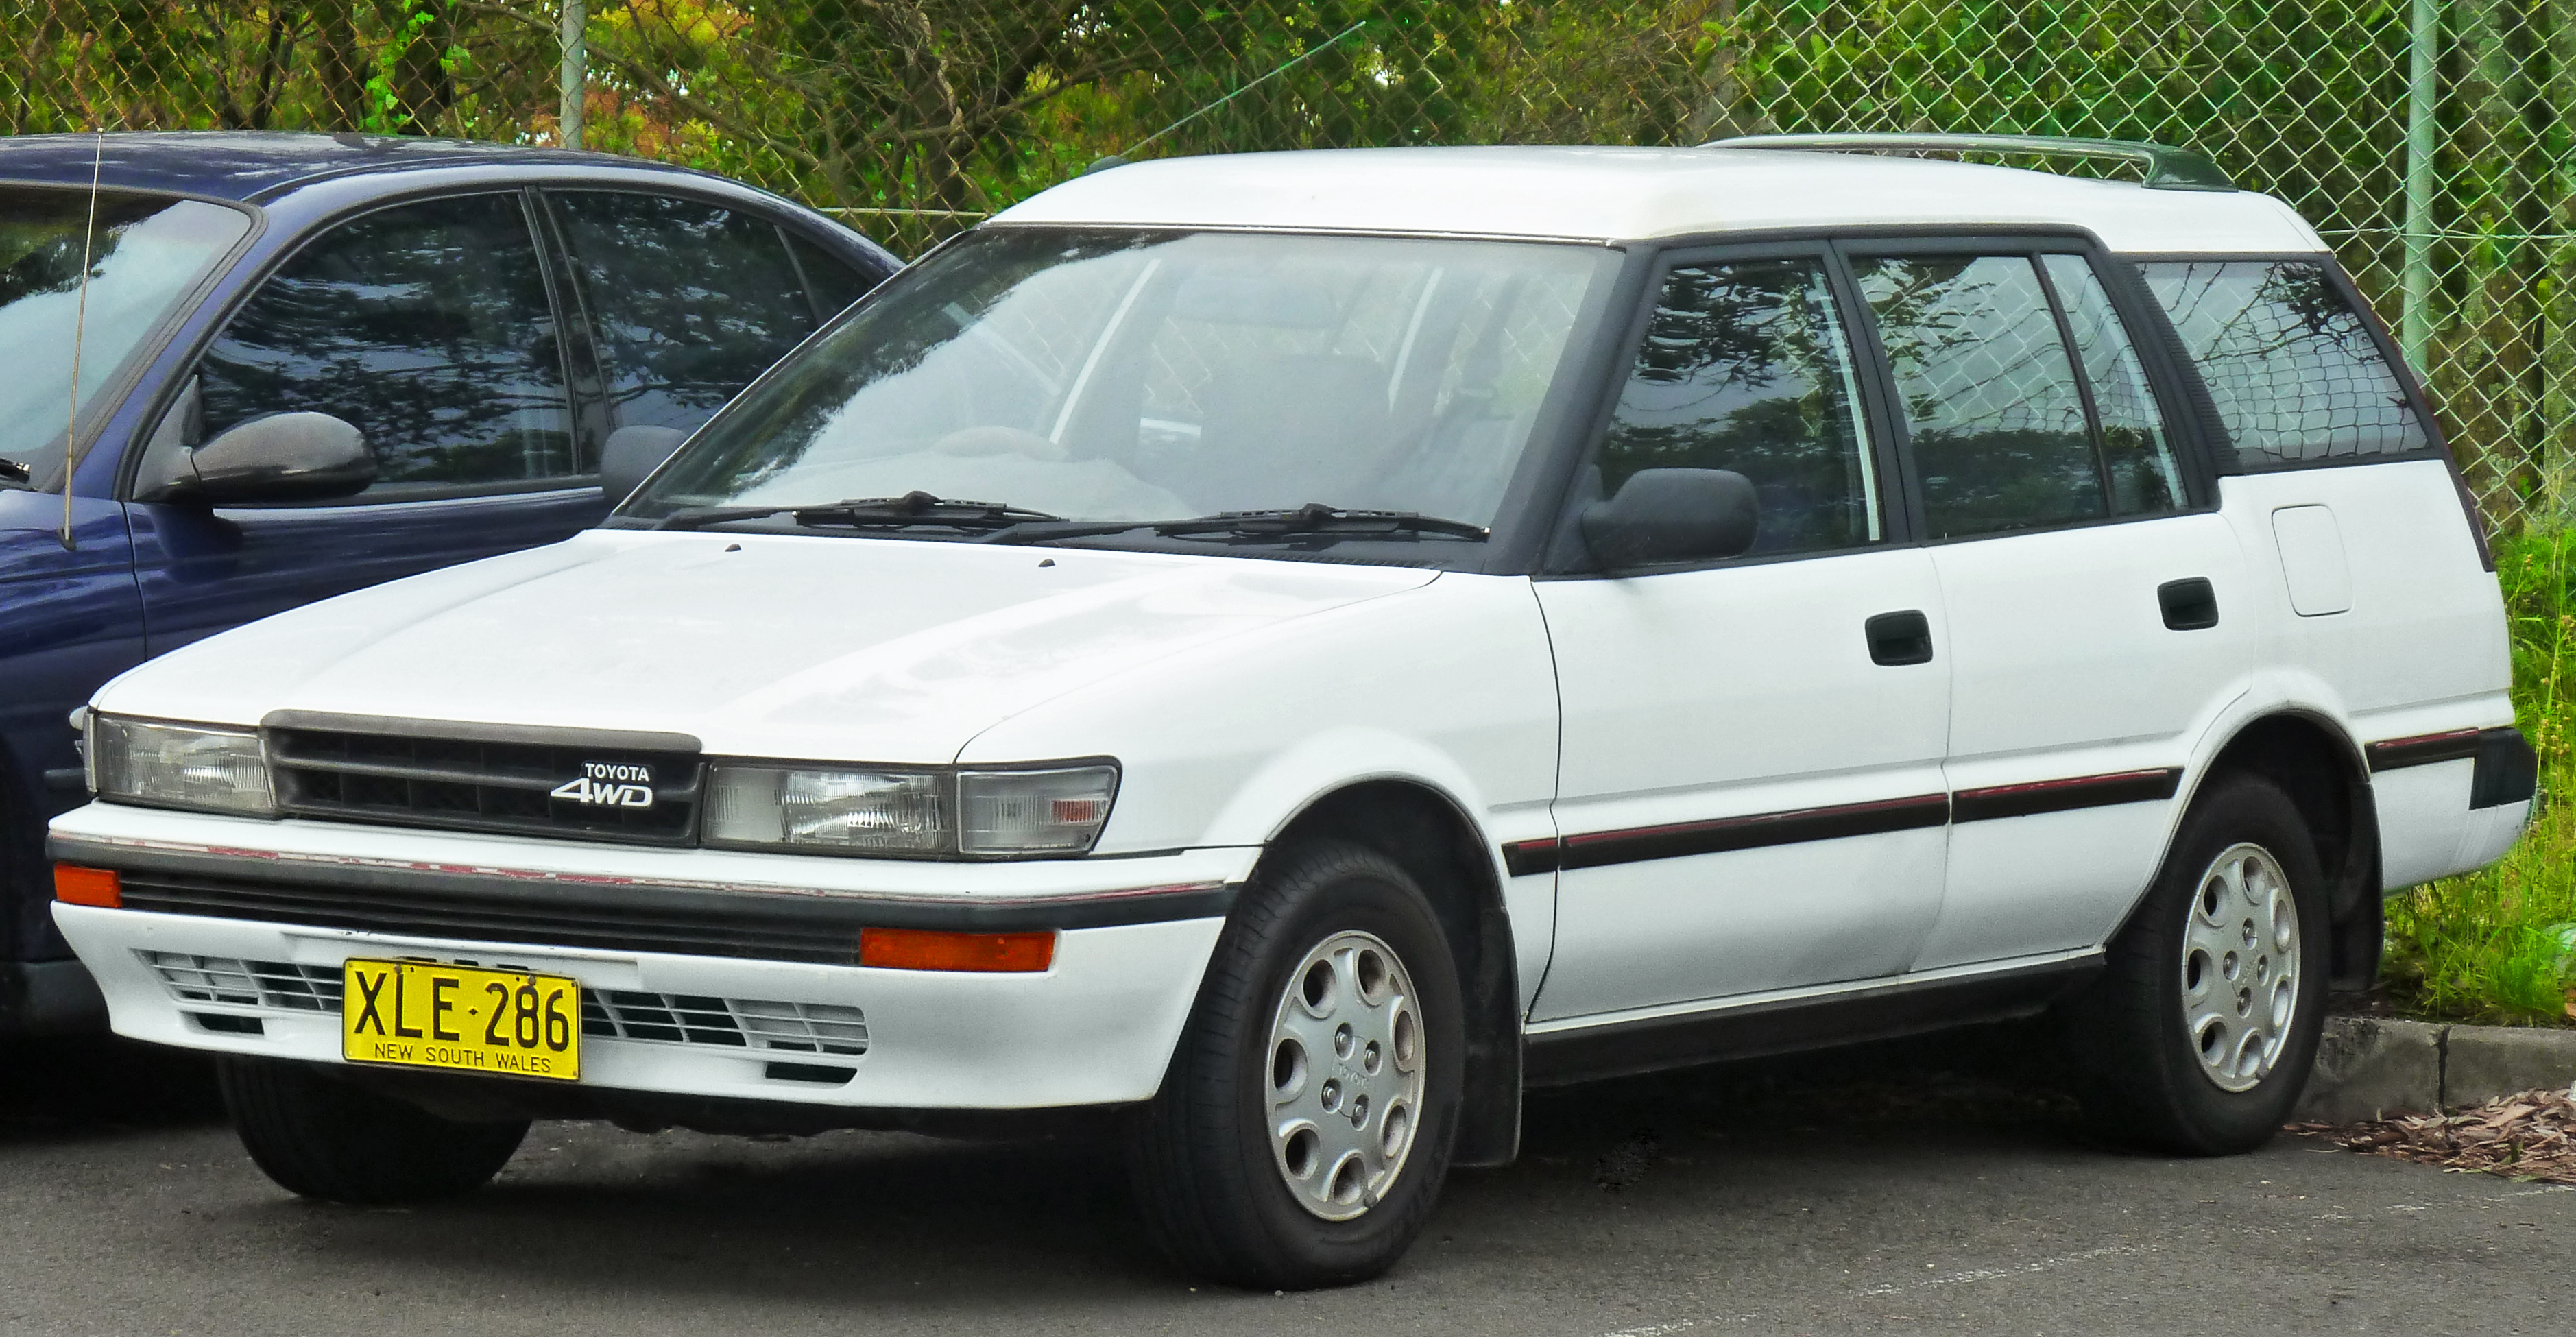 1989_Toyota_Corolla_(AE95R)_SR5_station_wagon_(2011-12-05).jpg